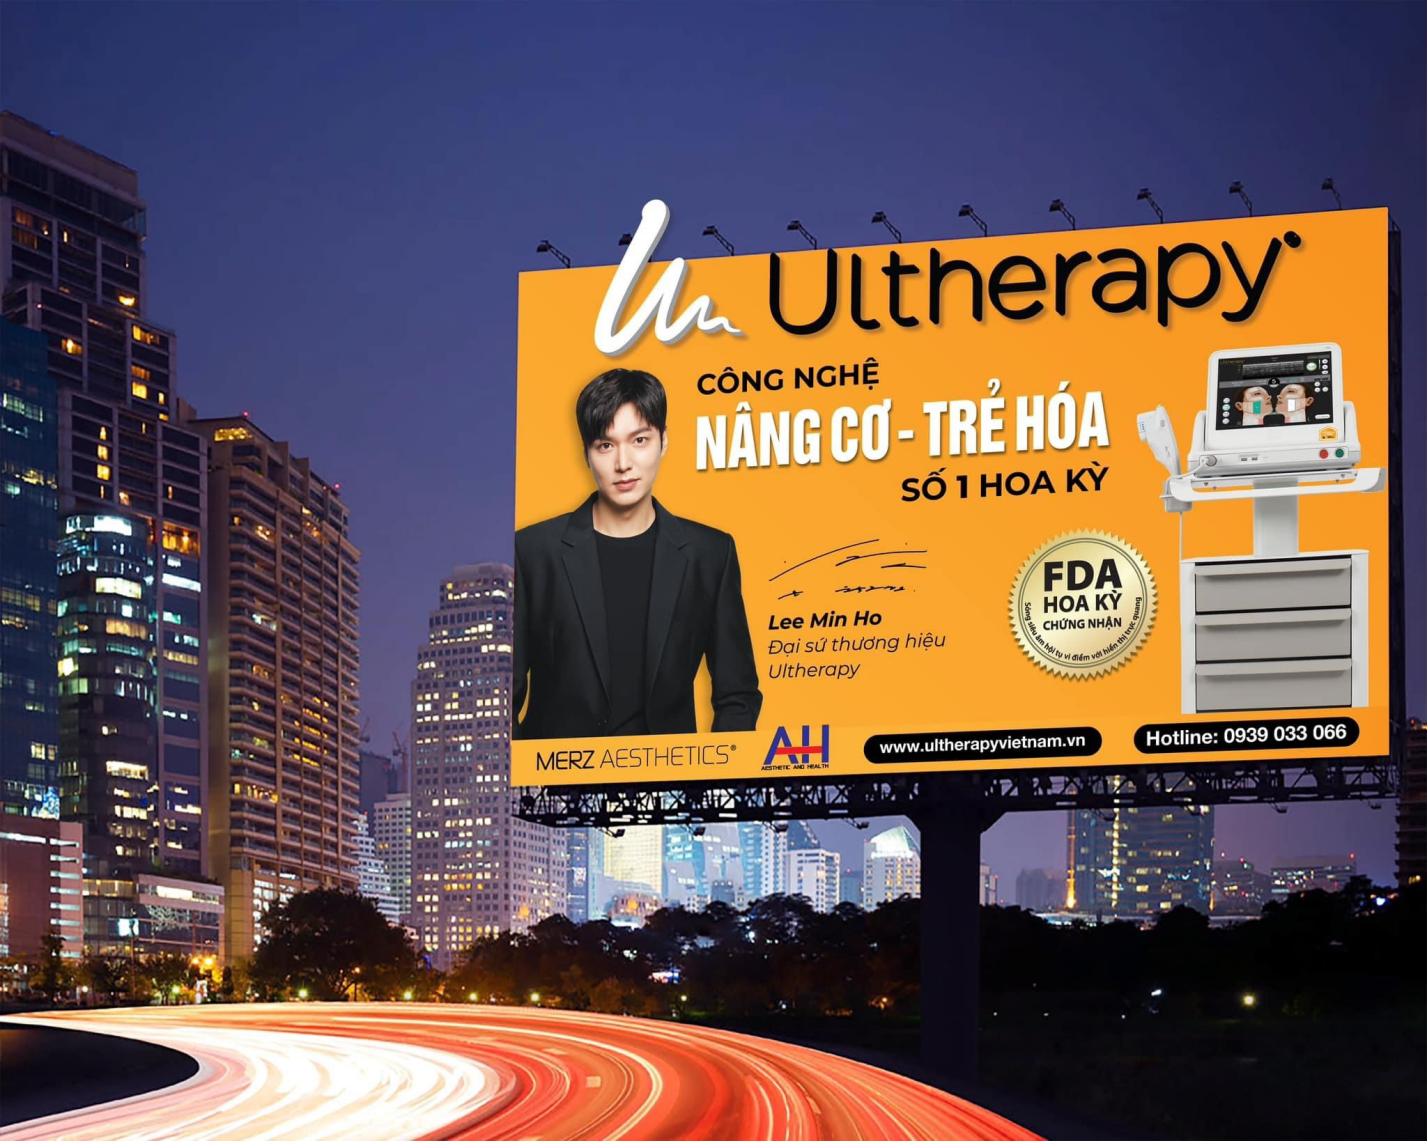 Bác sĩ Tô Lan Phương báo cáo trong hội thảo khoa học về Ultherapy - 1